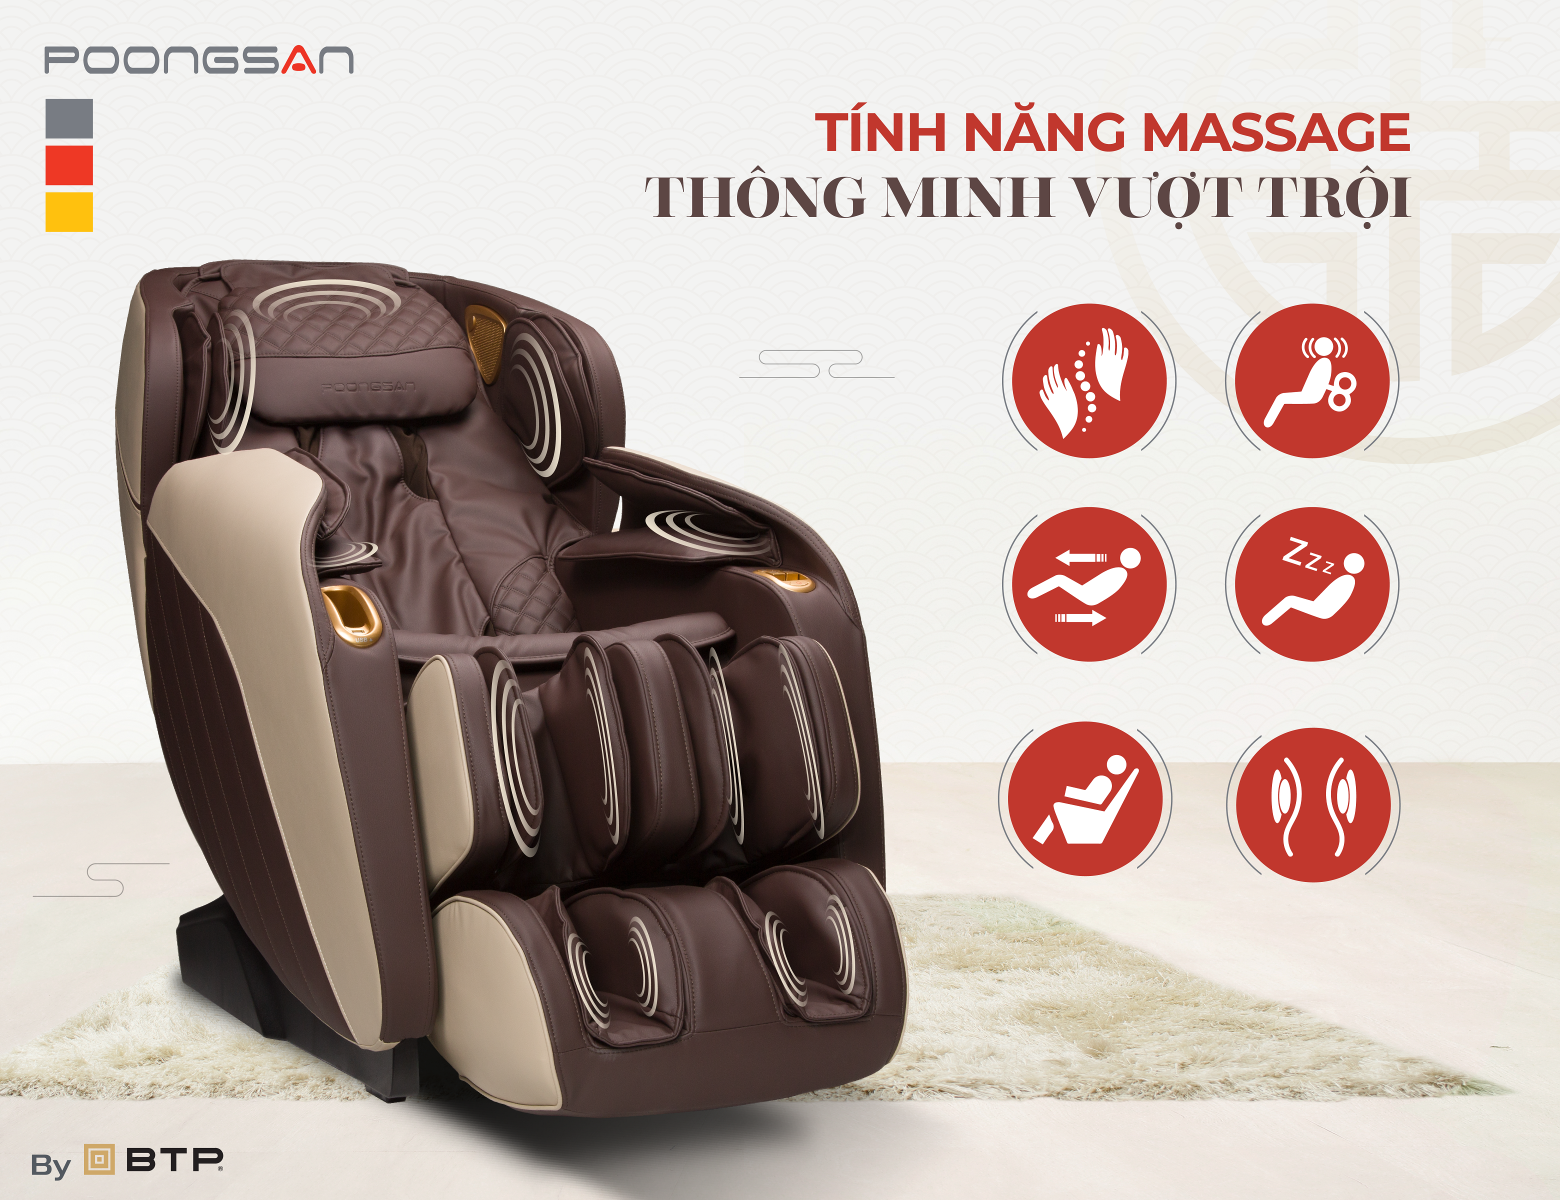 Ghế massage Hàn Quốc có đa dạng các tính năng thông minh vượt trội